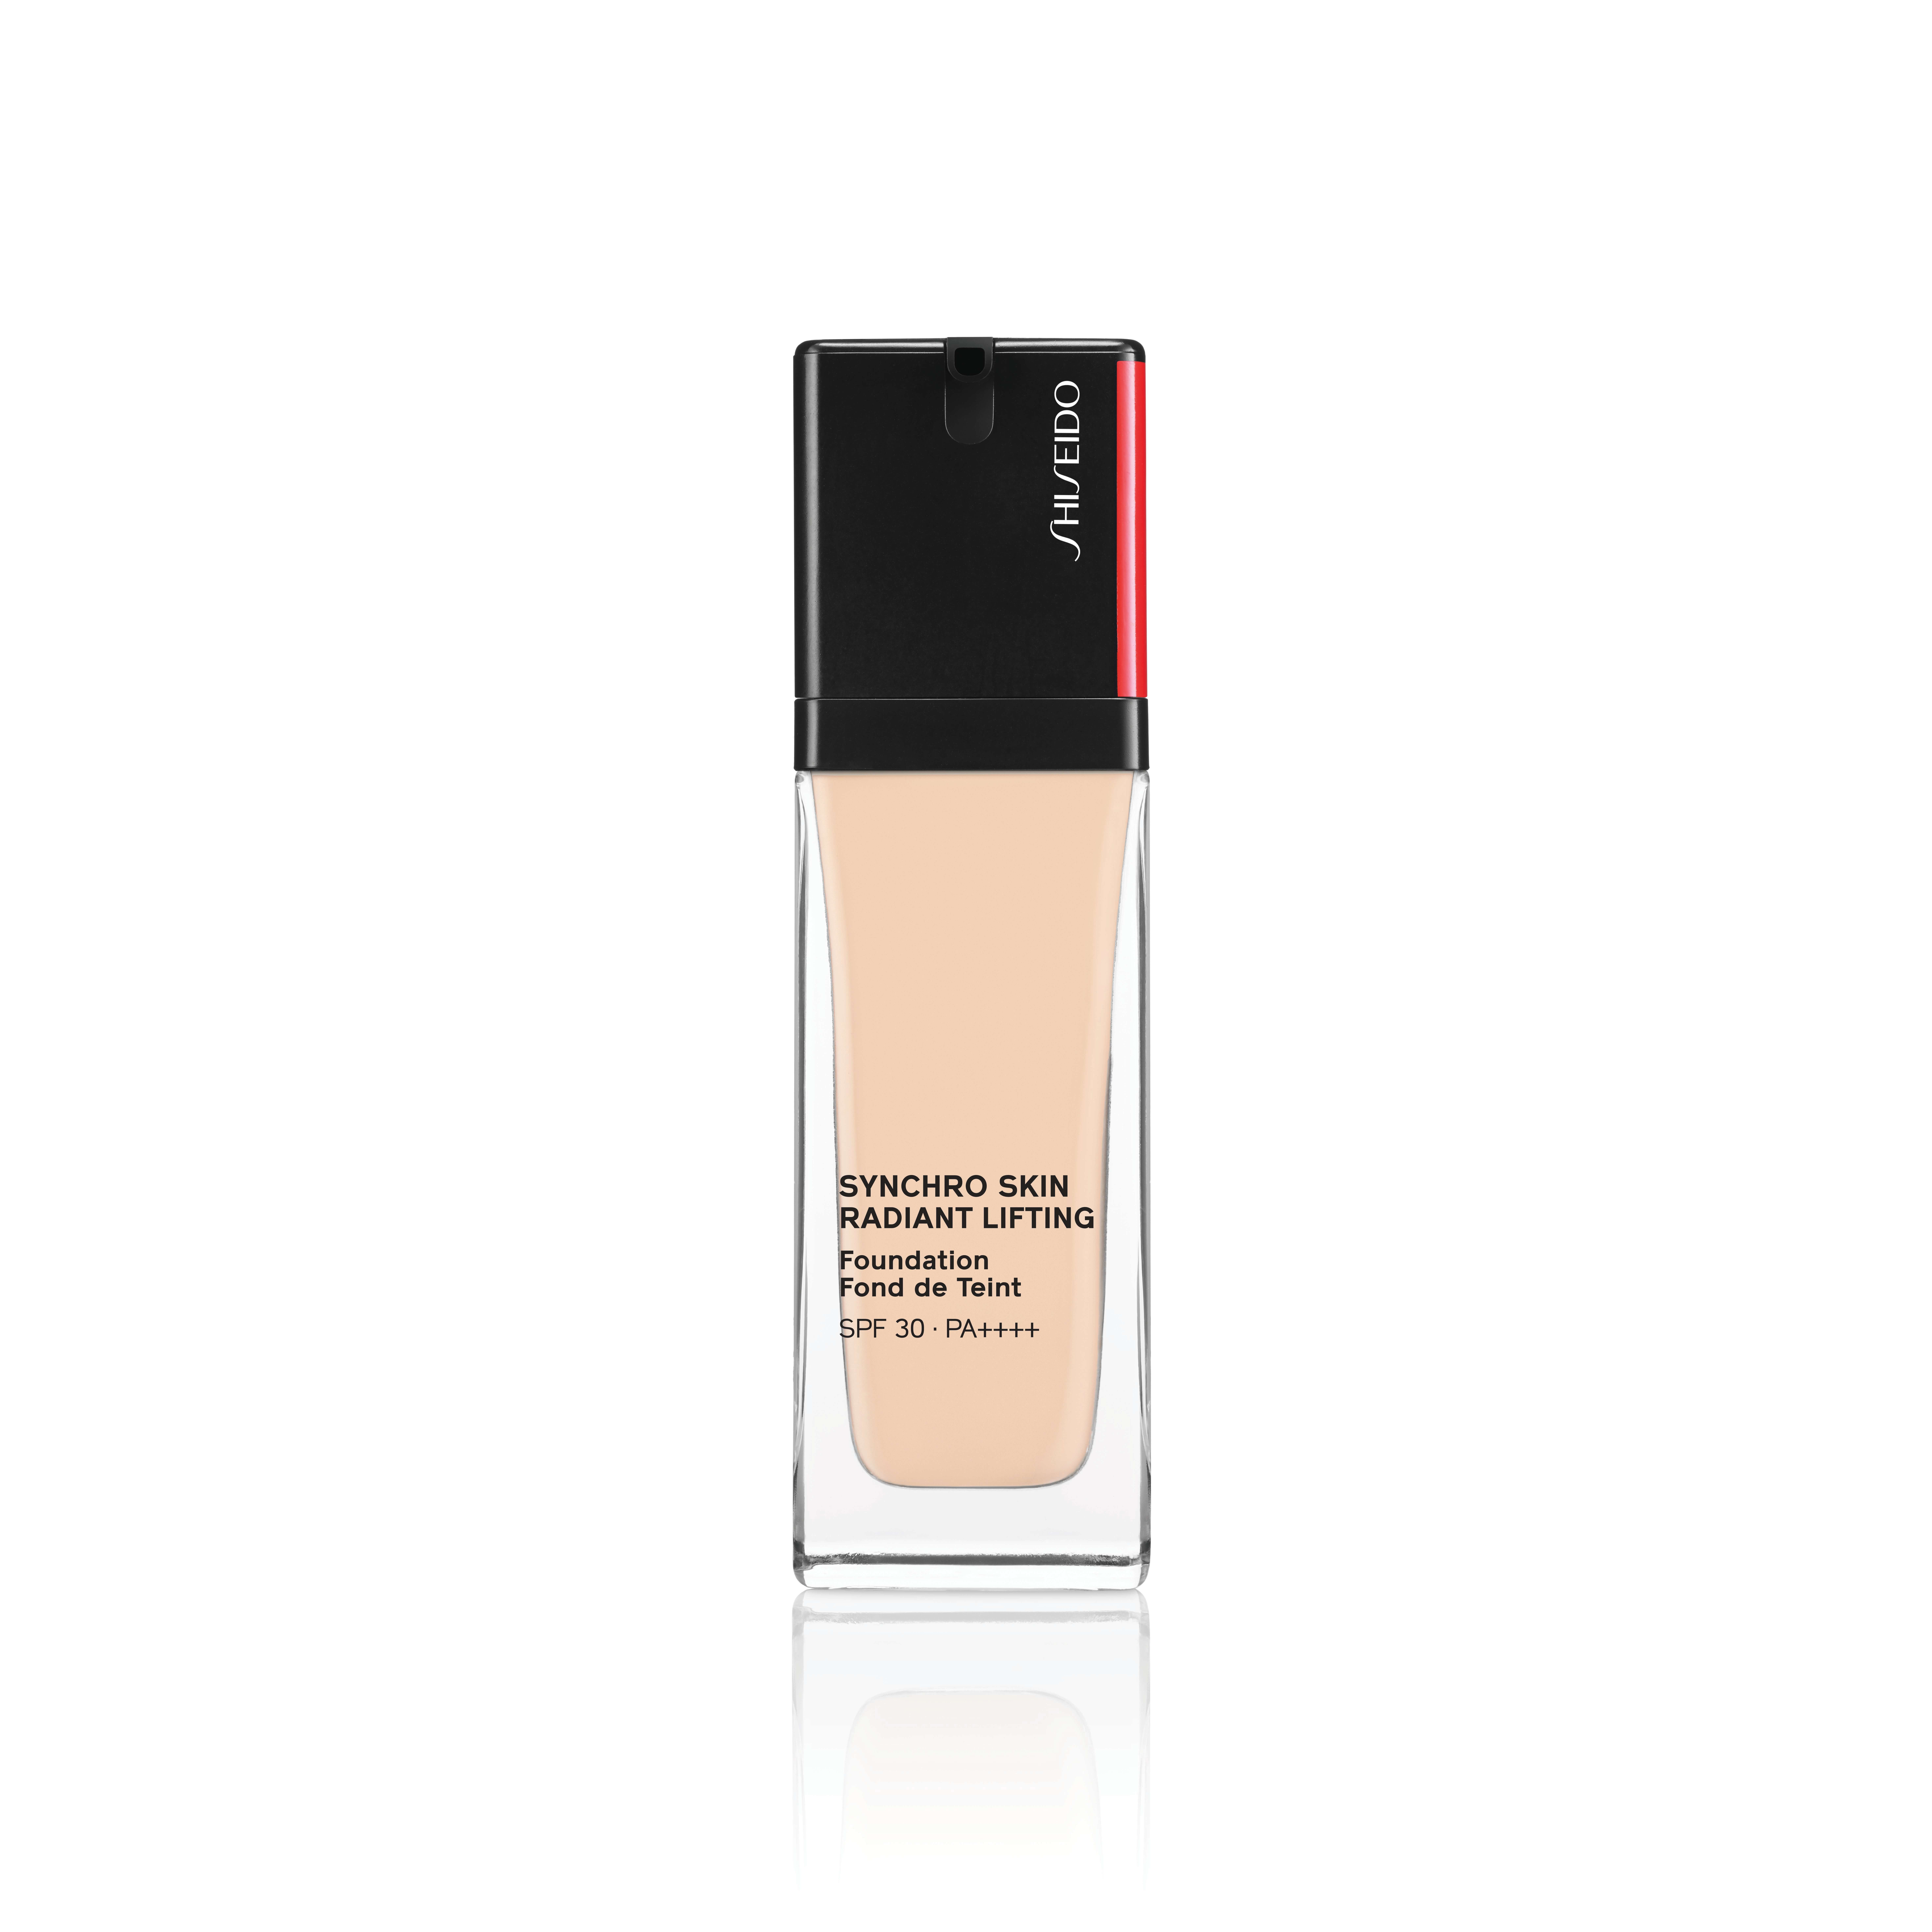 粉底液推薦：Shiseido Synchro Skin Radiant Lifting Foundation 感肌同步緊緻亮顏粉底SPF30 PA++++ $390/30ml